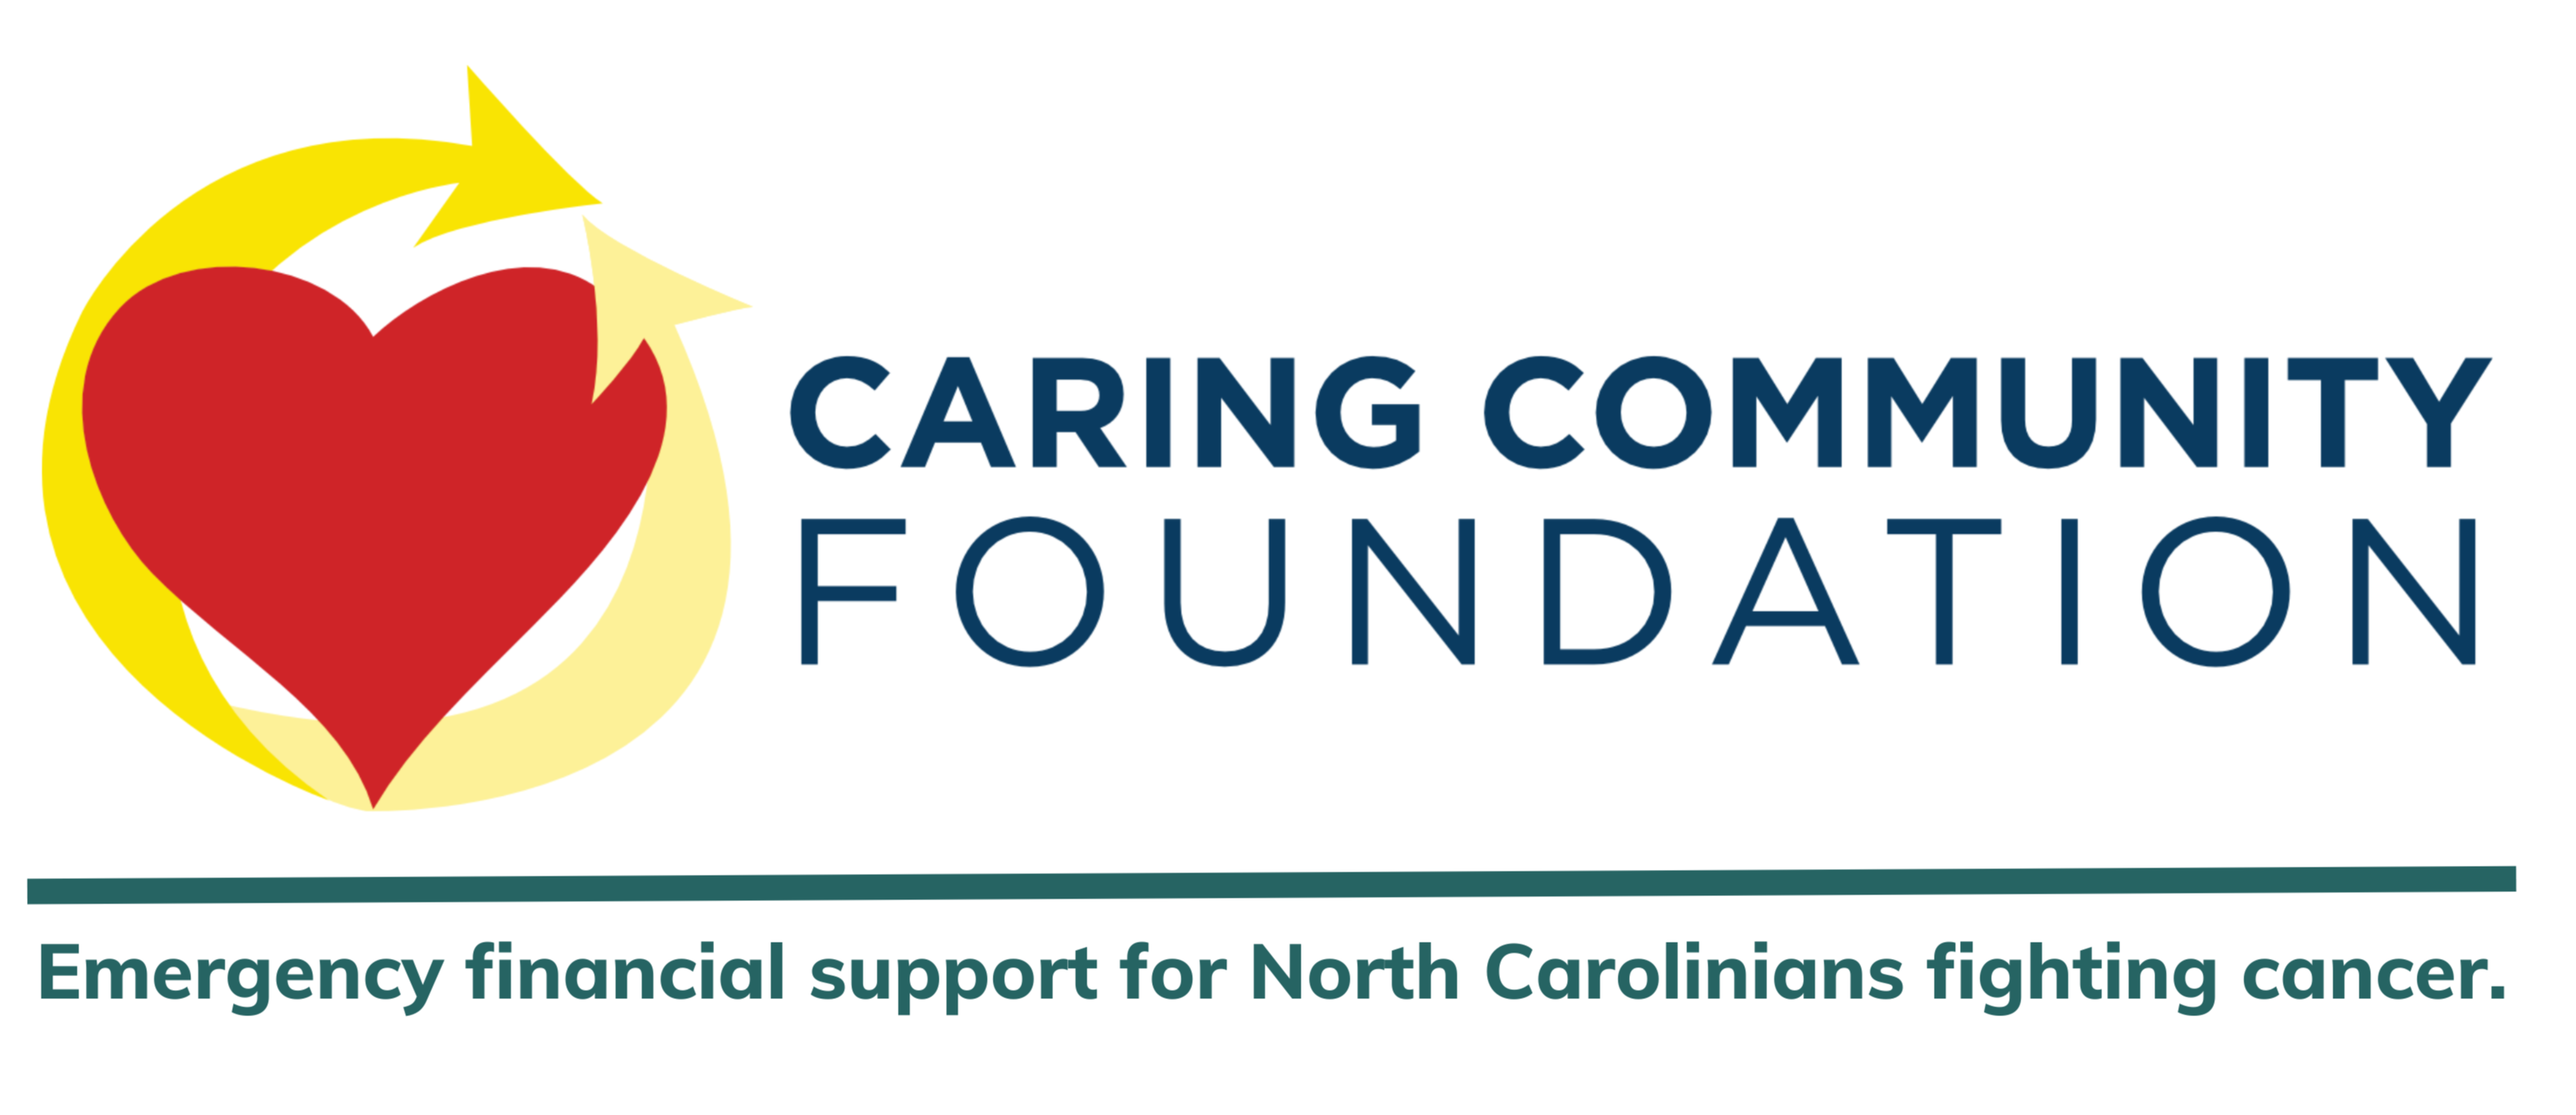 Caring Community Foundation logo